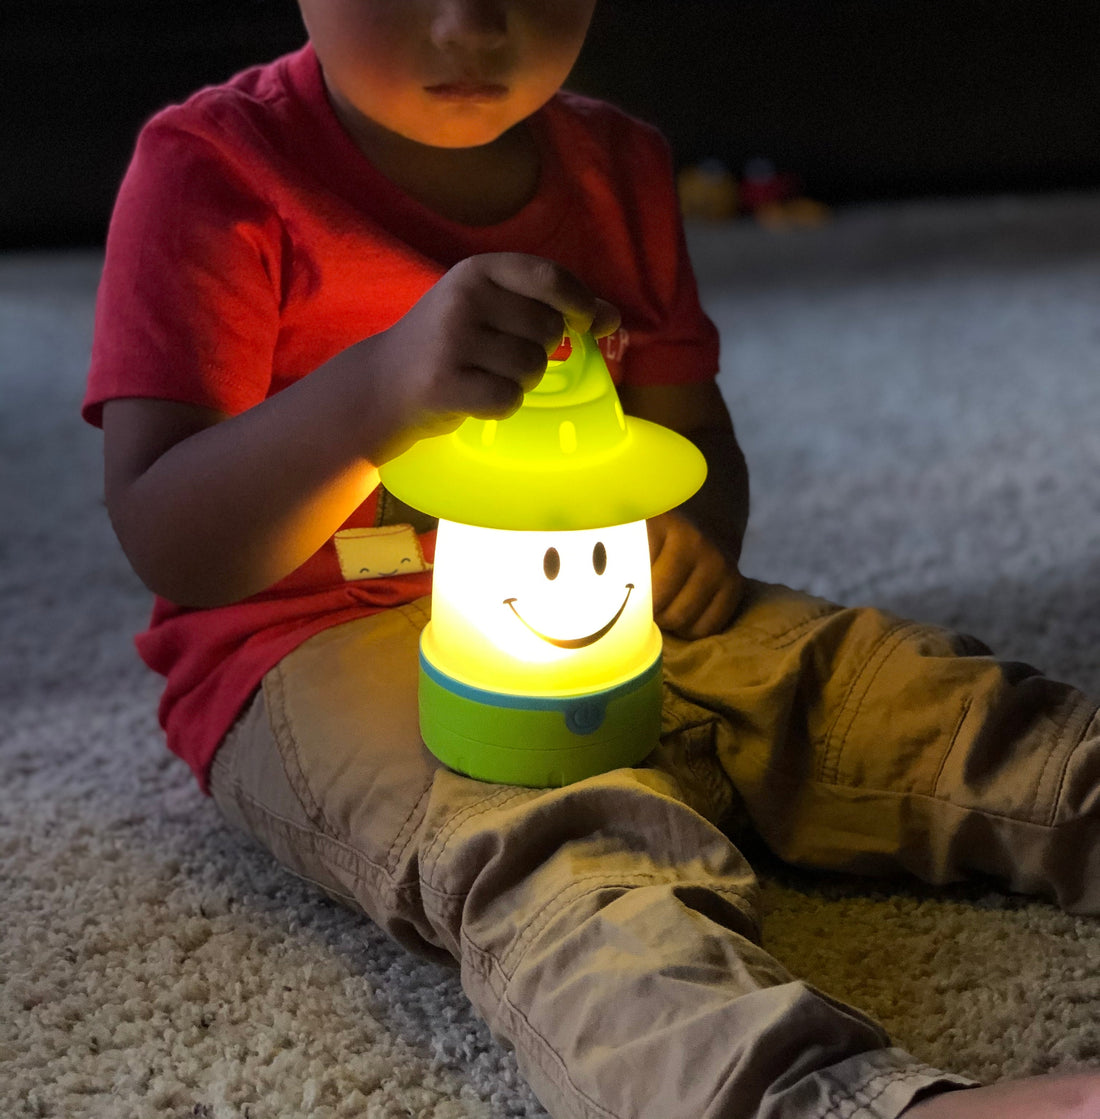 SMiLE Soft LED Night Lantern - Battery Operated